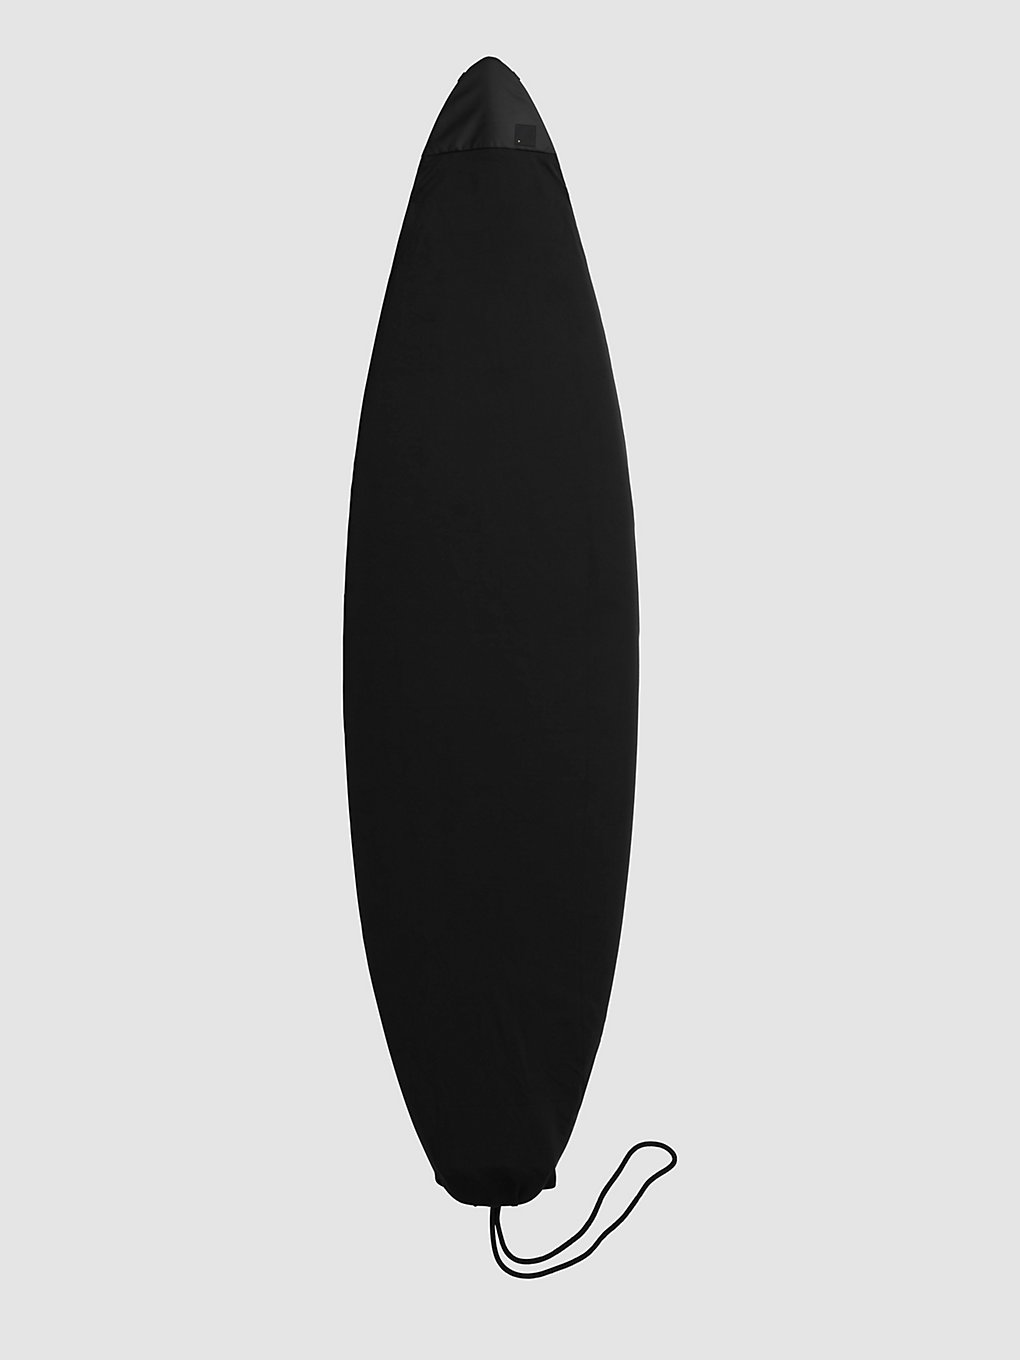 Db Surf Sock 5'8" Stab Ltd Surfboard-Tasche stab ltd kaufen